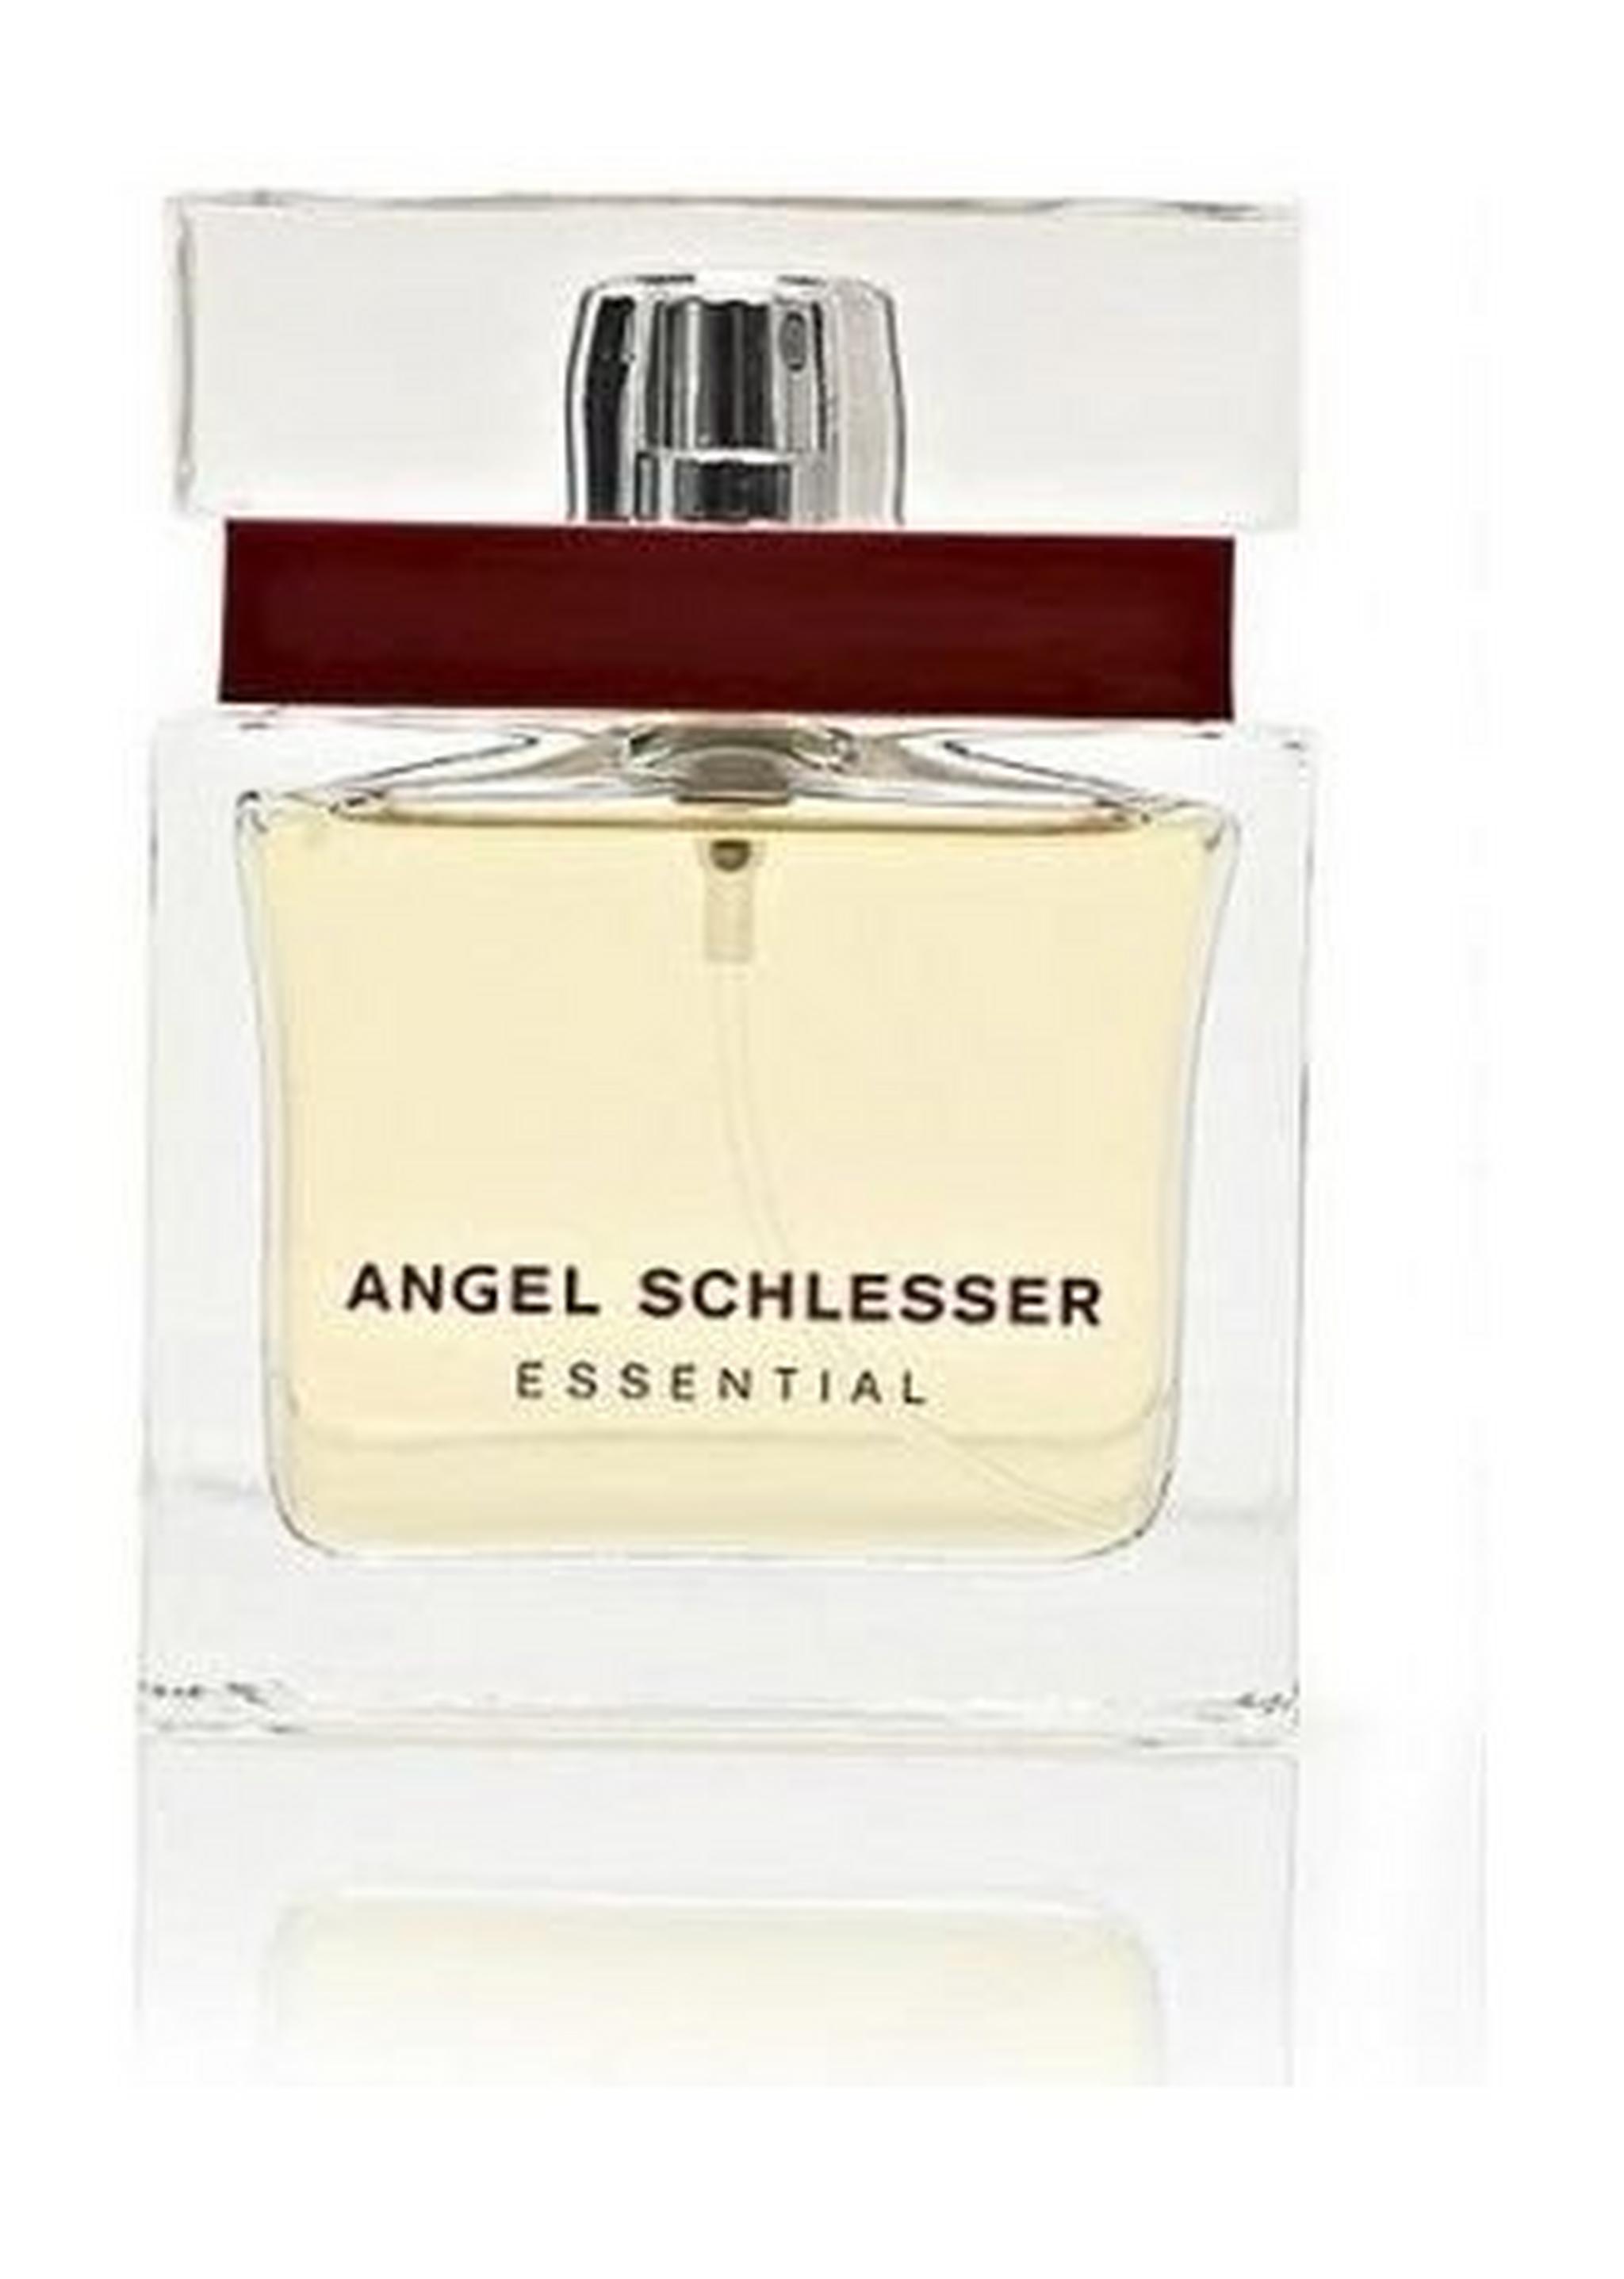 Angel Schlesser Essential by Angel Schlesser For Women 50ml Eau de Parfum